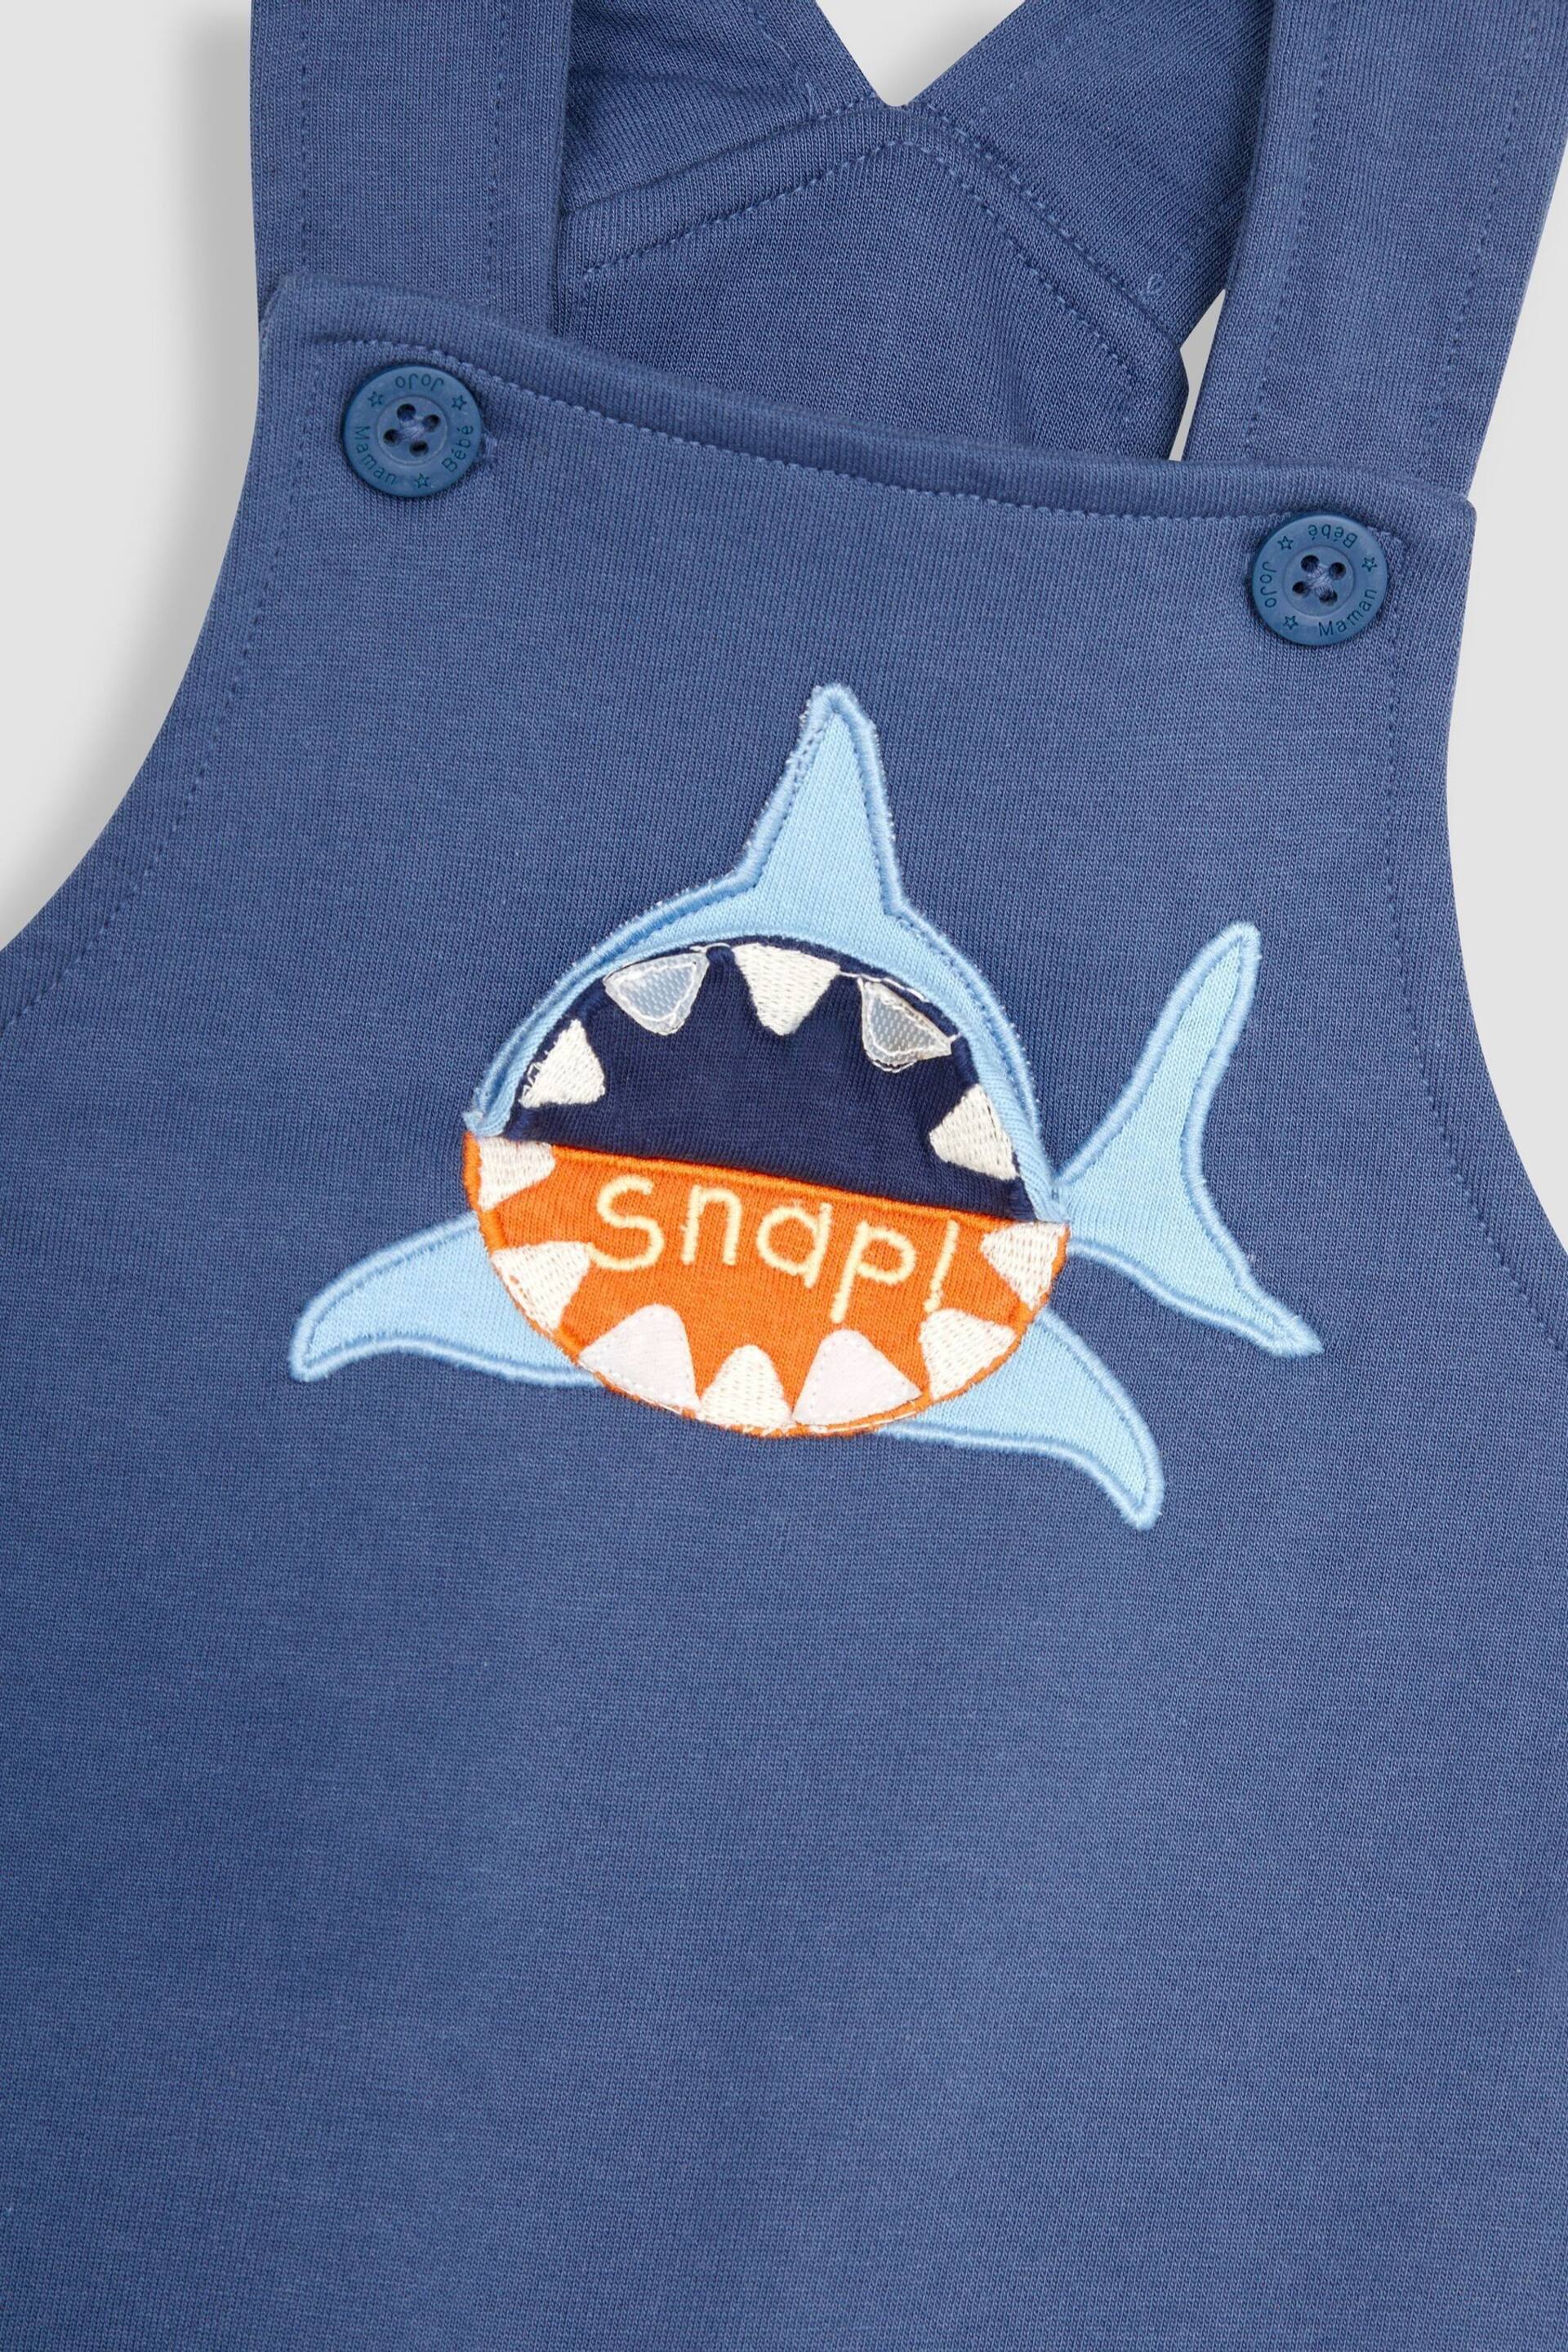 JoJo Maman Bébé Navy Blue Shark Appliqué Trouser Dungarees & T-Shirt Set - Image 7 of 7